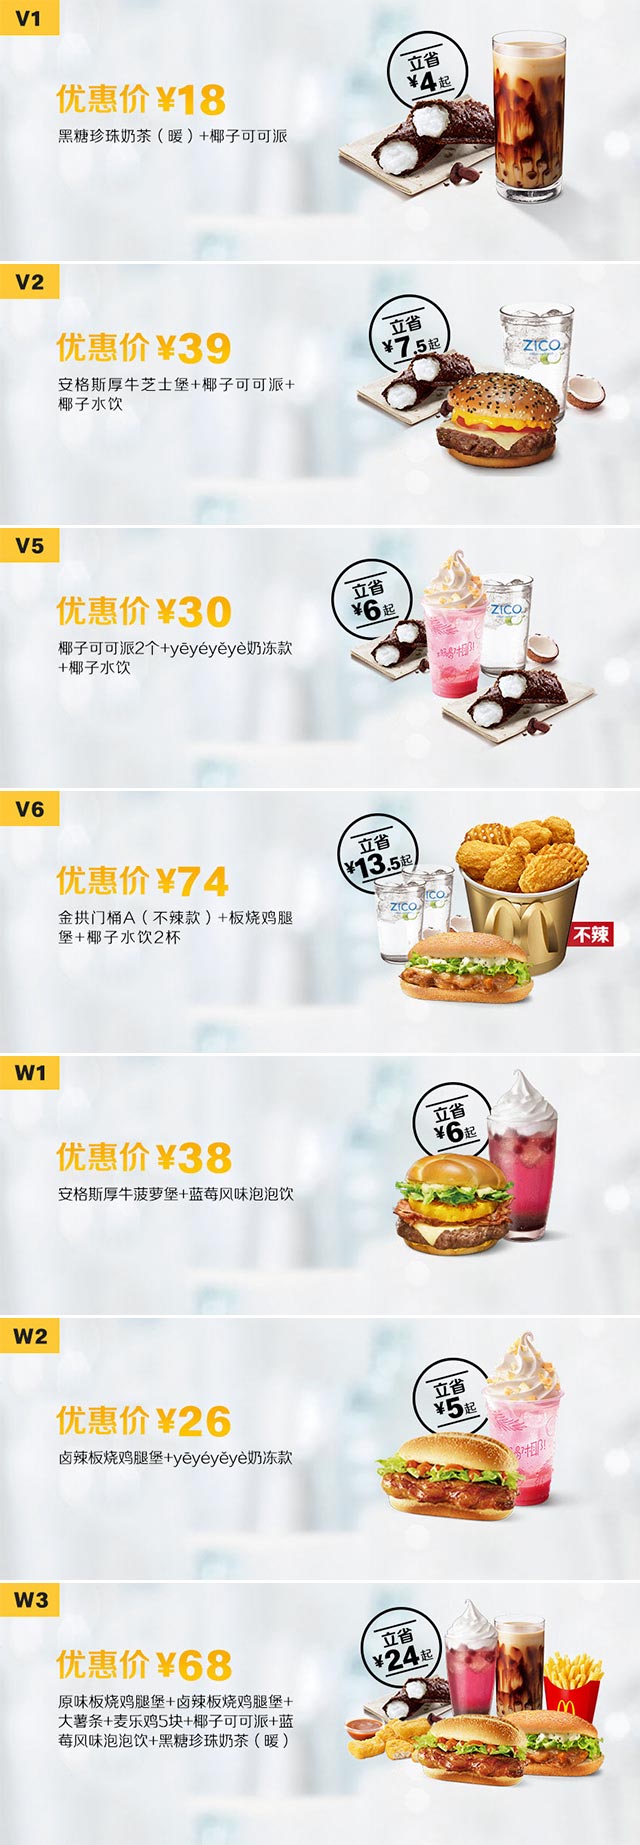 麦当劳优惠券2019年11月27日至2019年12月24日手机版整张，点餐时出示优惠券享优惠价